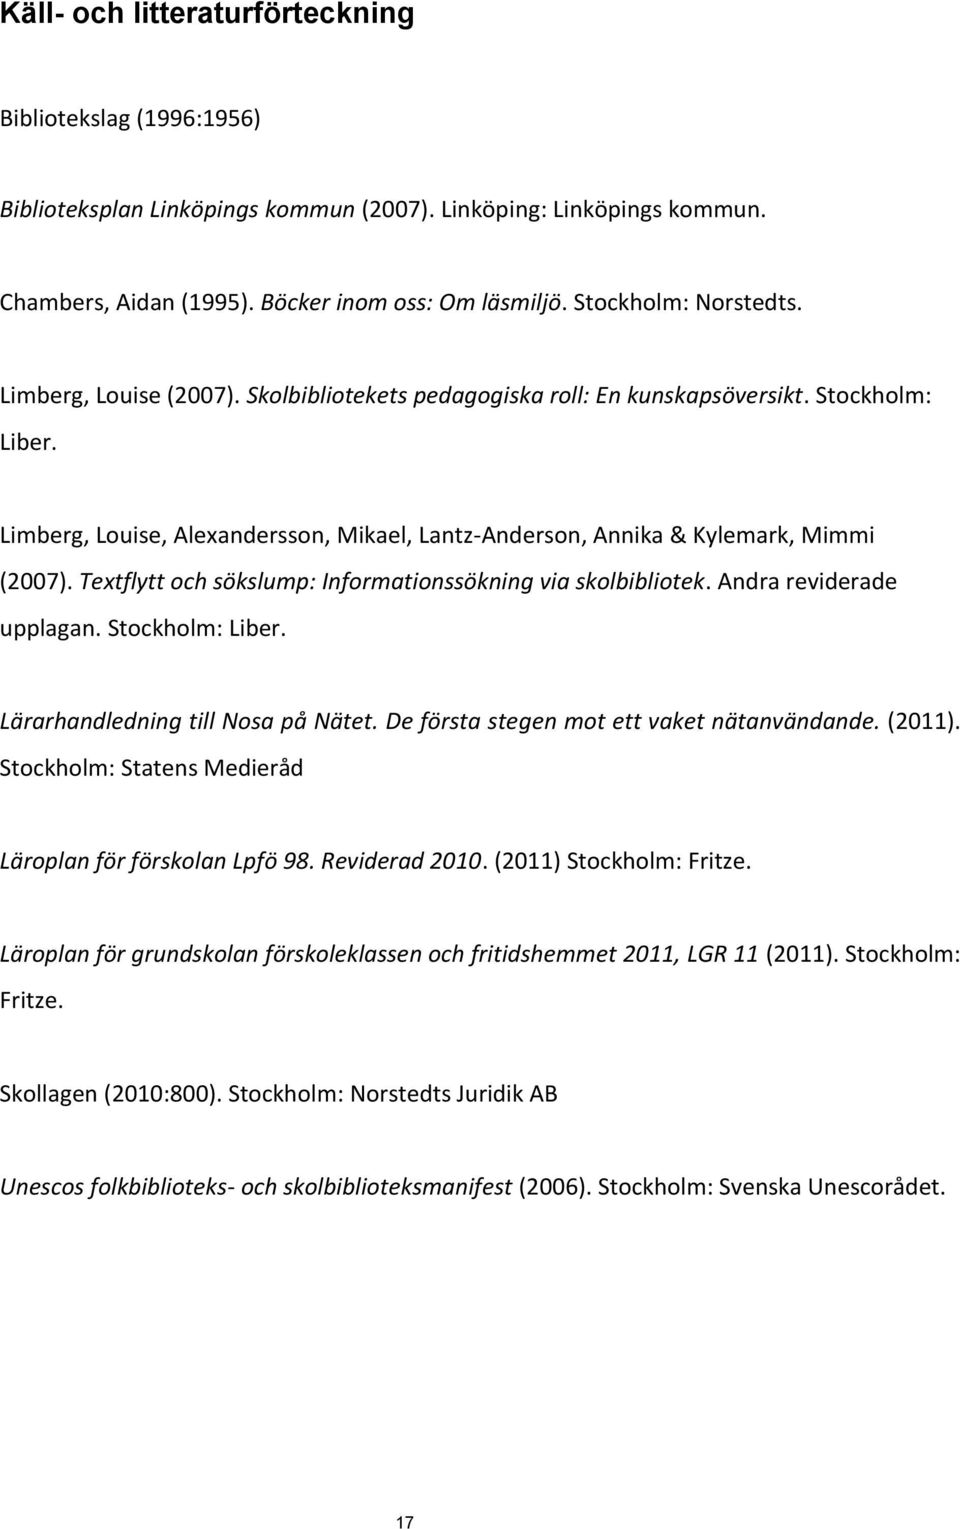 Limberg, Louise, Alexandersson, Mikael, Lantz-Anderson, Annika & Kylemark, Mimmi (2007). Textflytt och sökslump: Informationssökning via skolbibliotek. Andra reviderade upplagan. Stockholm: Liber.